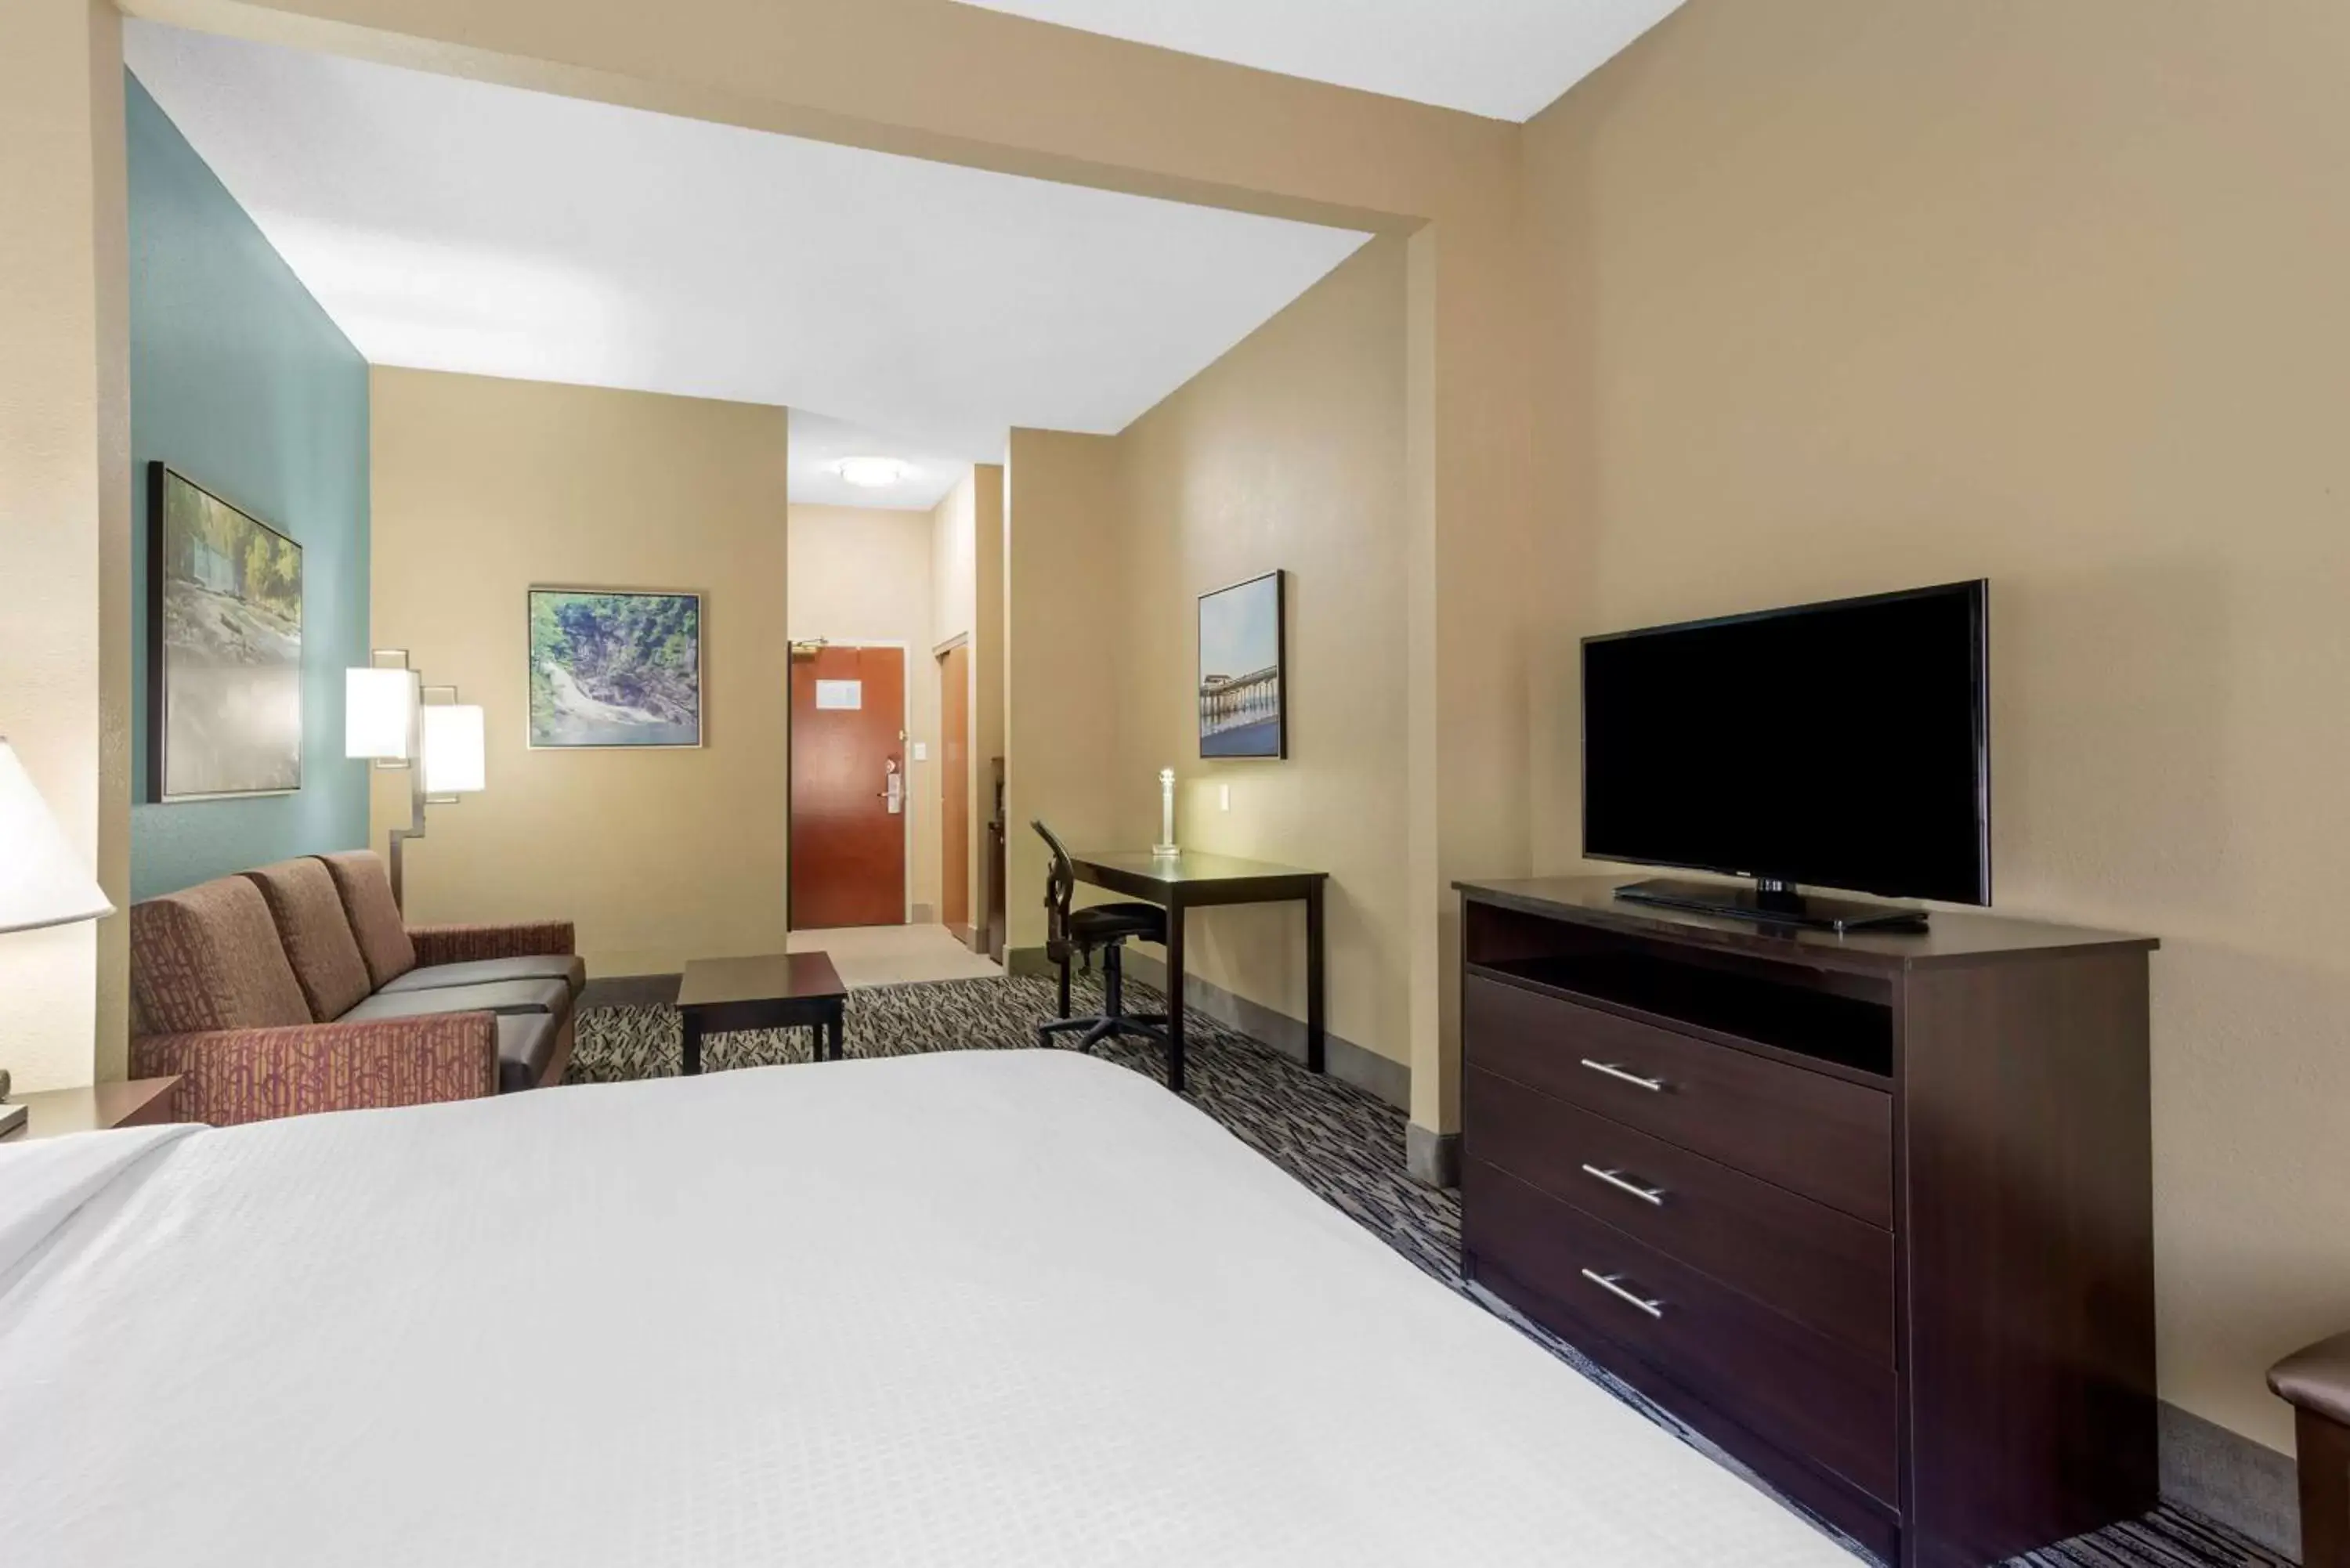 Bedroom, Bed in Best Western Plus McDonough Inn & Suites